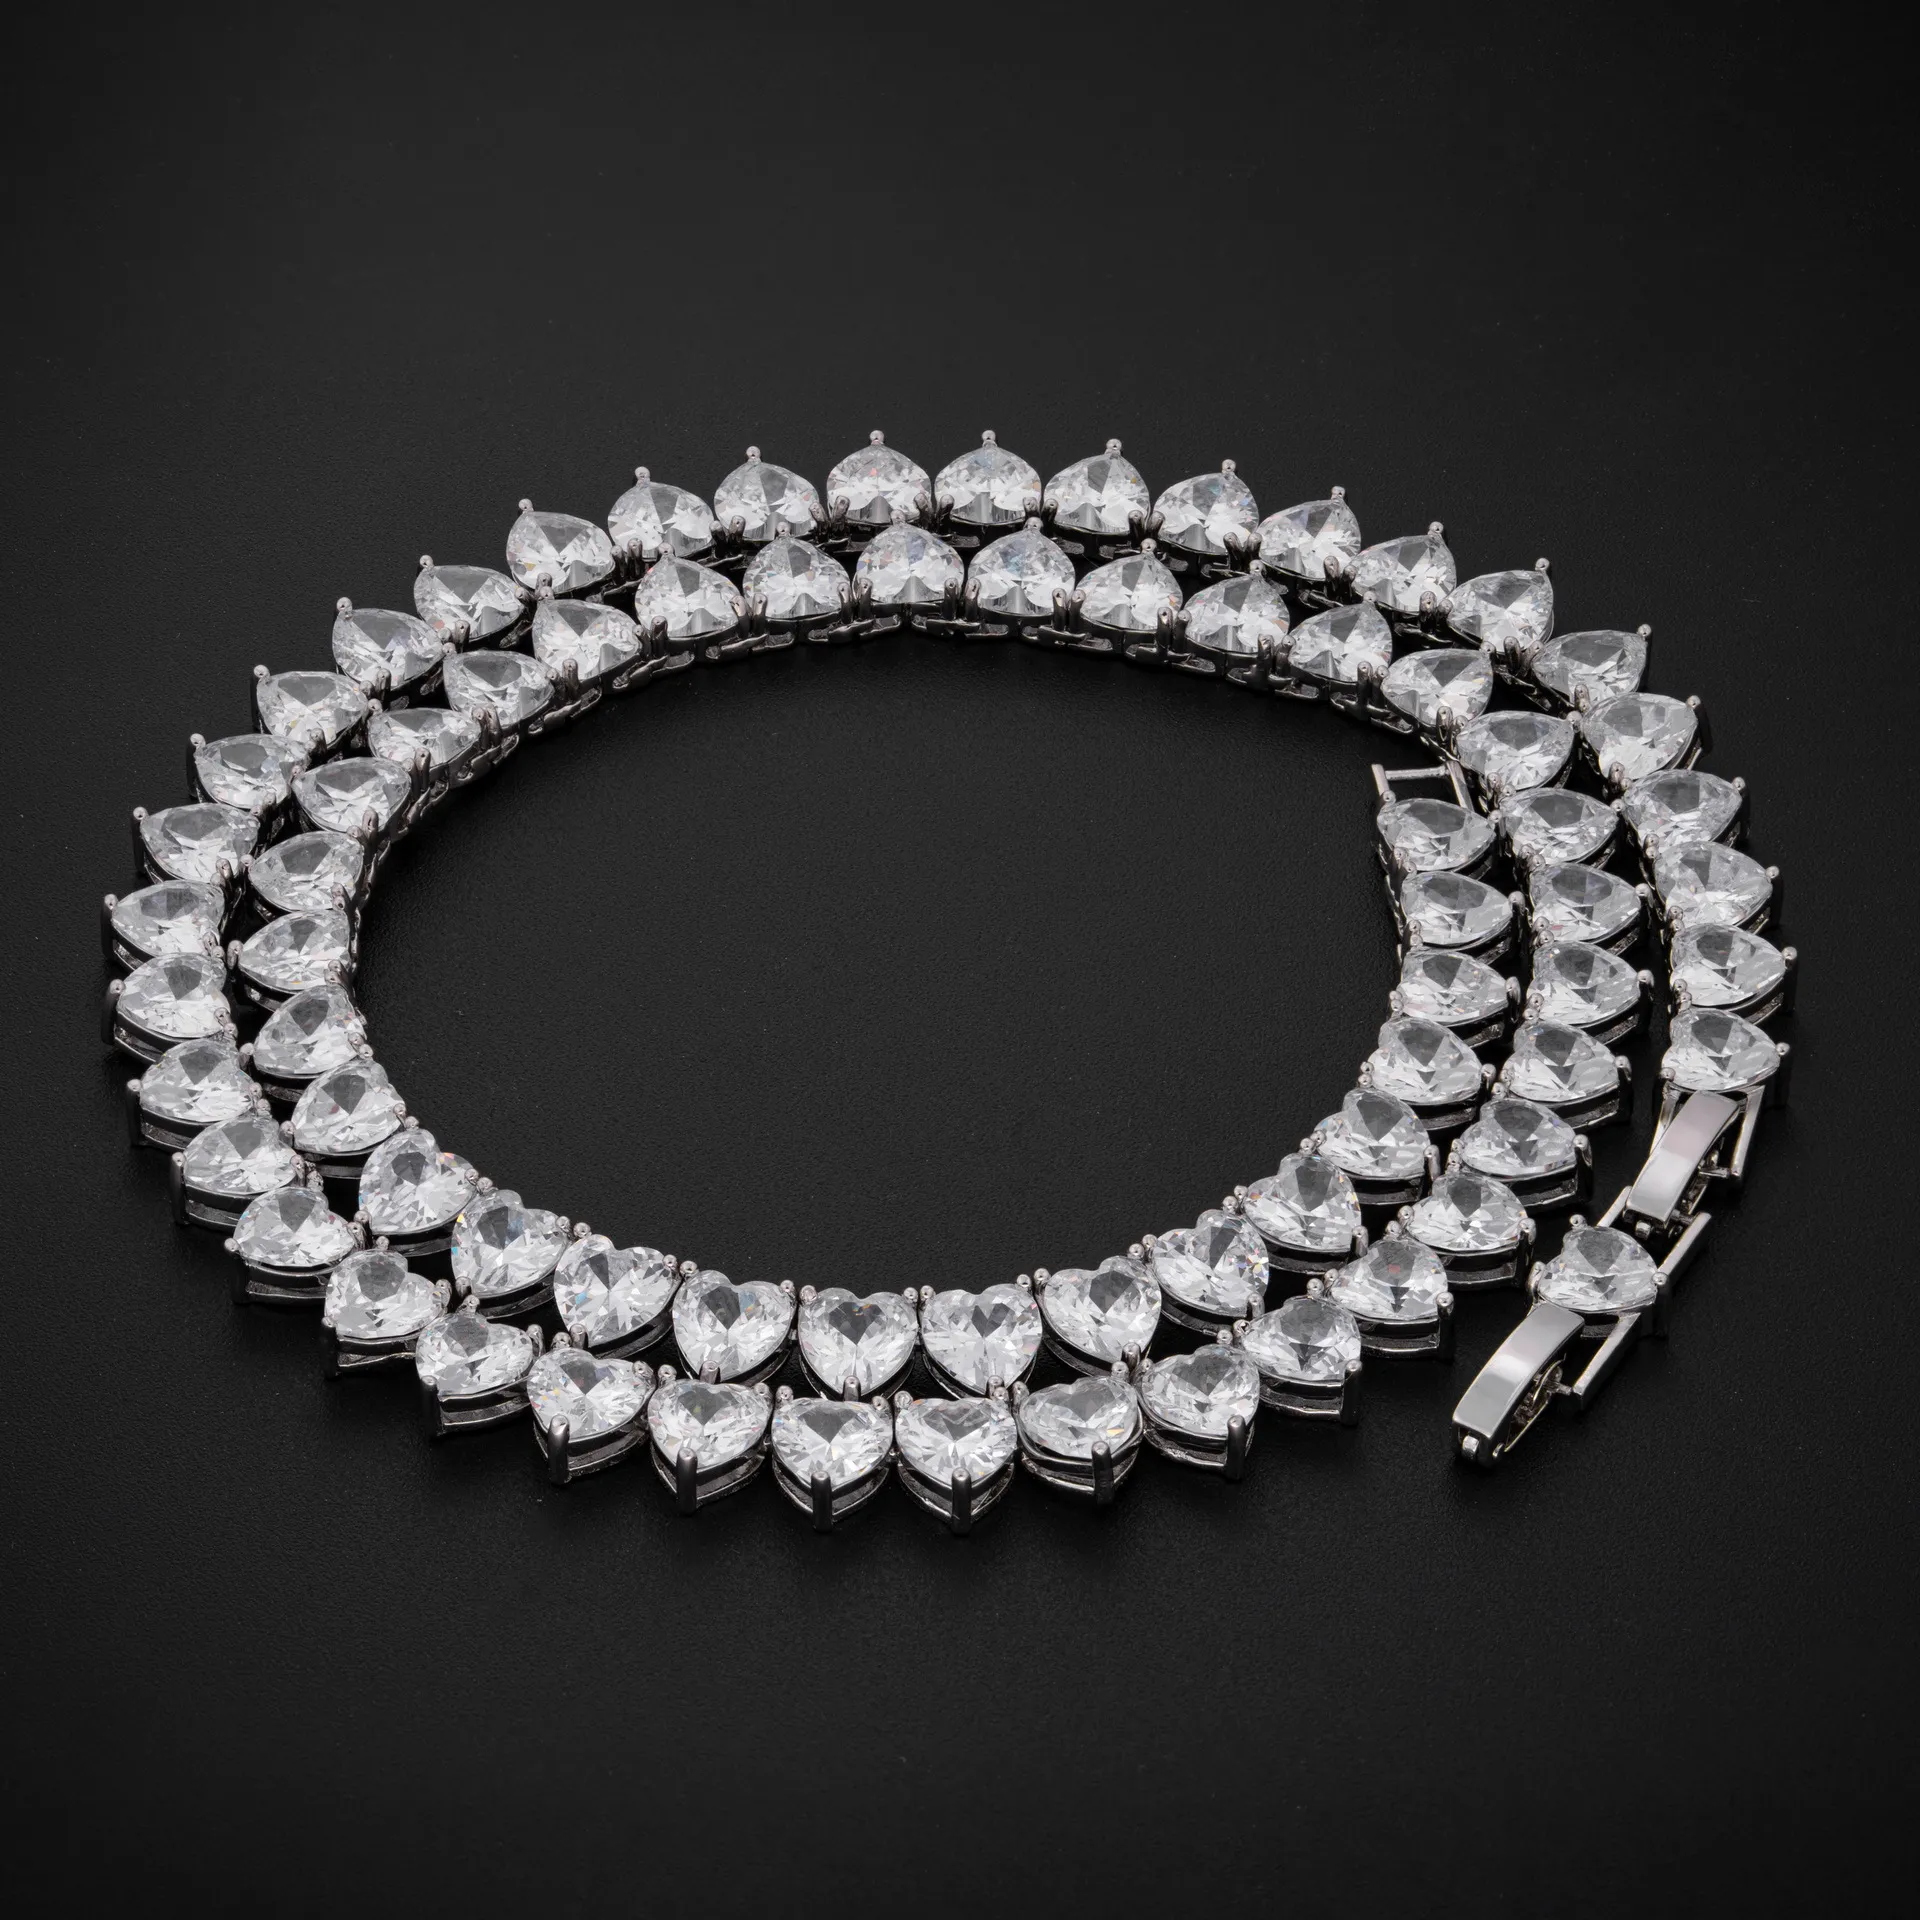 7mm 16-24 pouces plaqué or Bling CZ coeur chaîne de Tennis colliers pour hommes femmes chaîne mode bijoux 296I